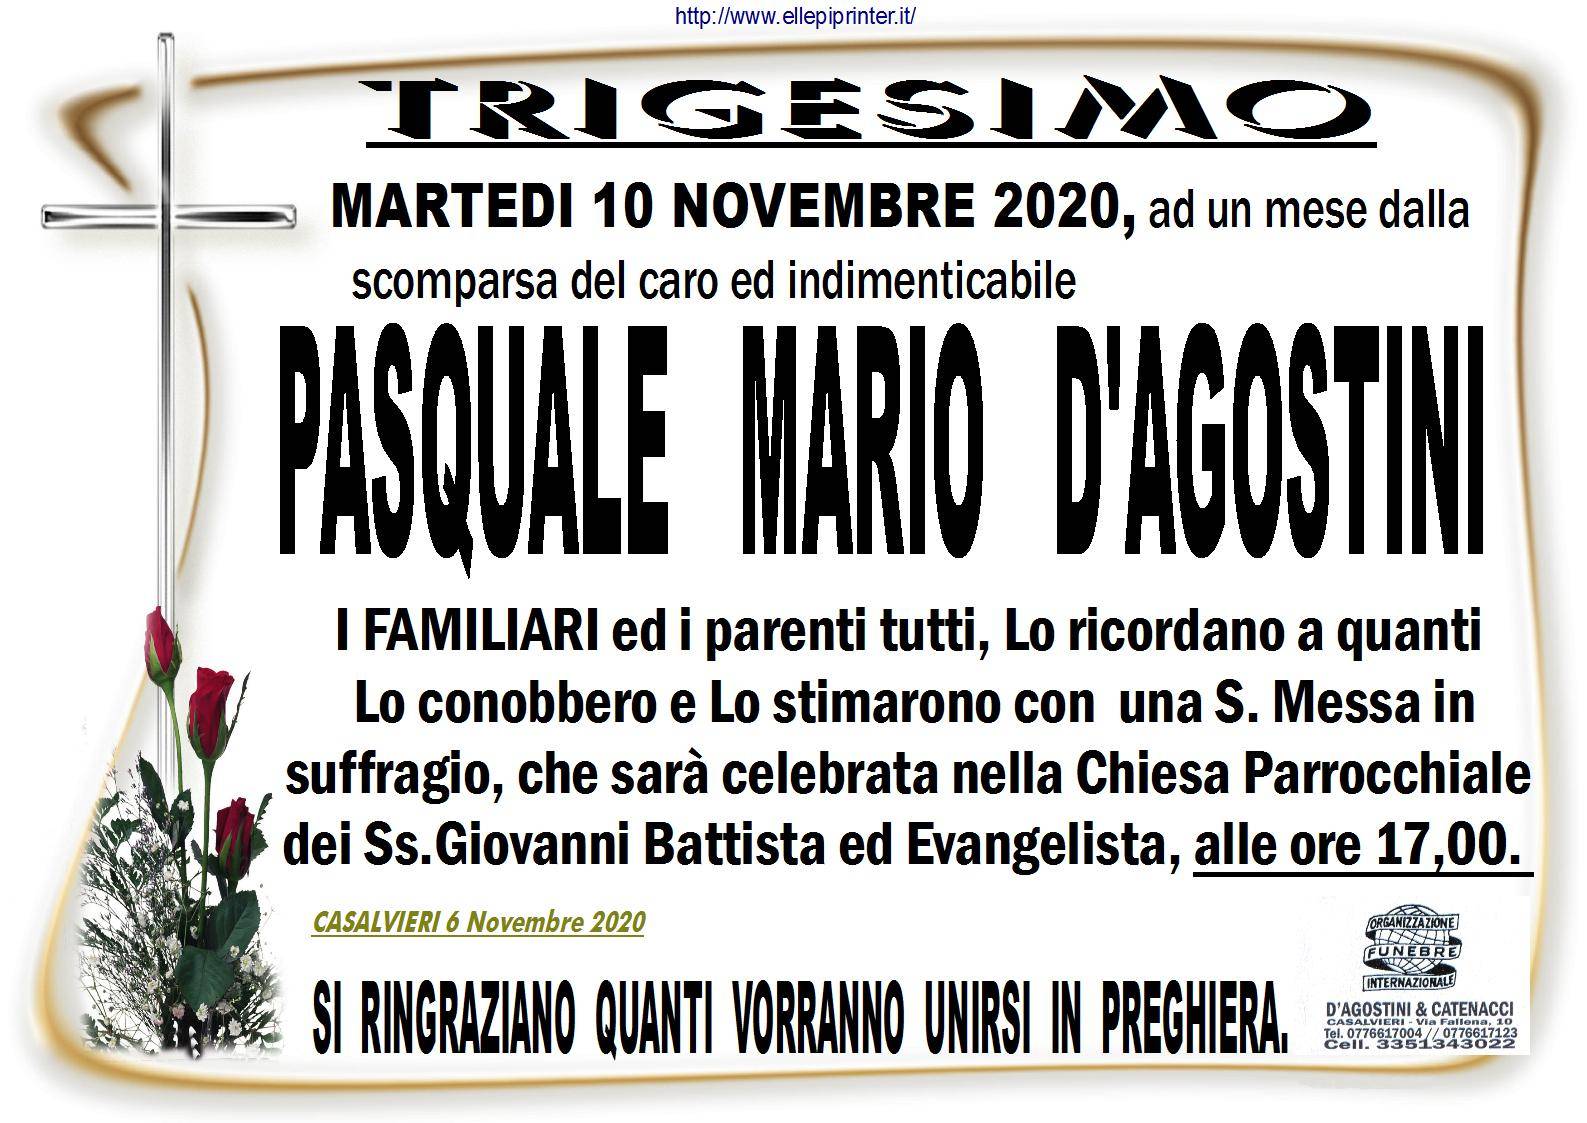 Pasquale Mario D'Agostini